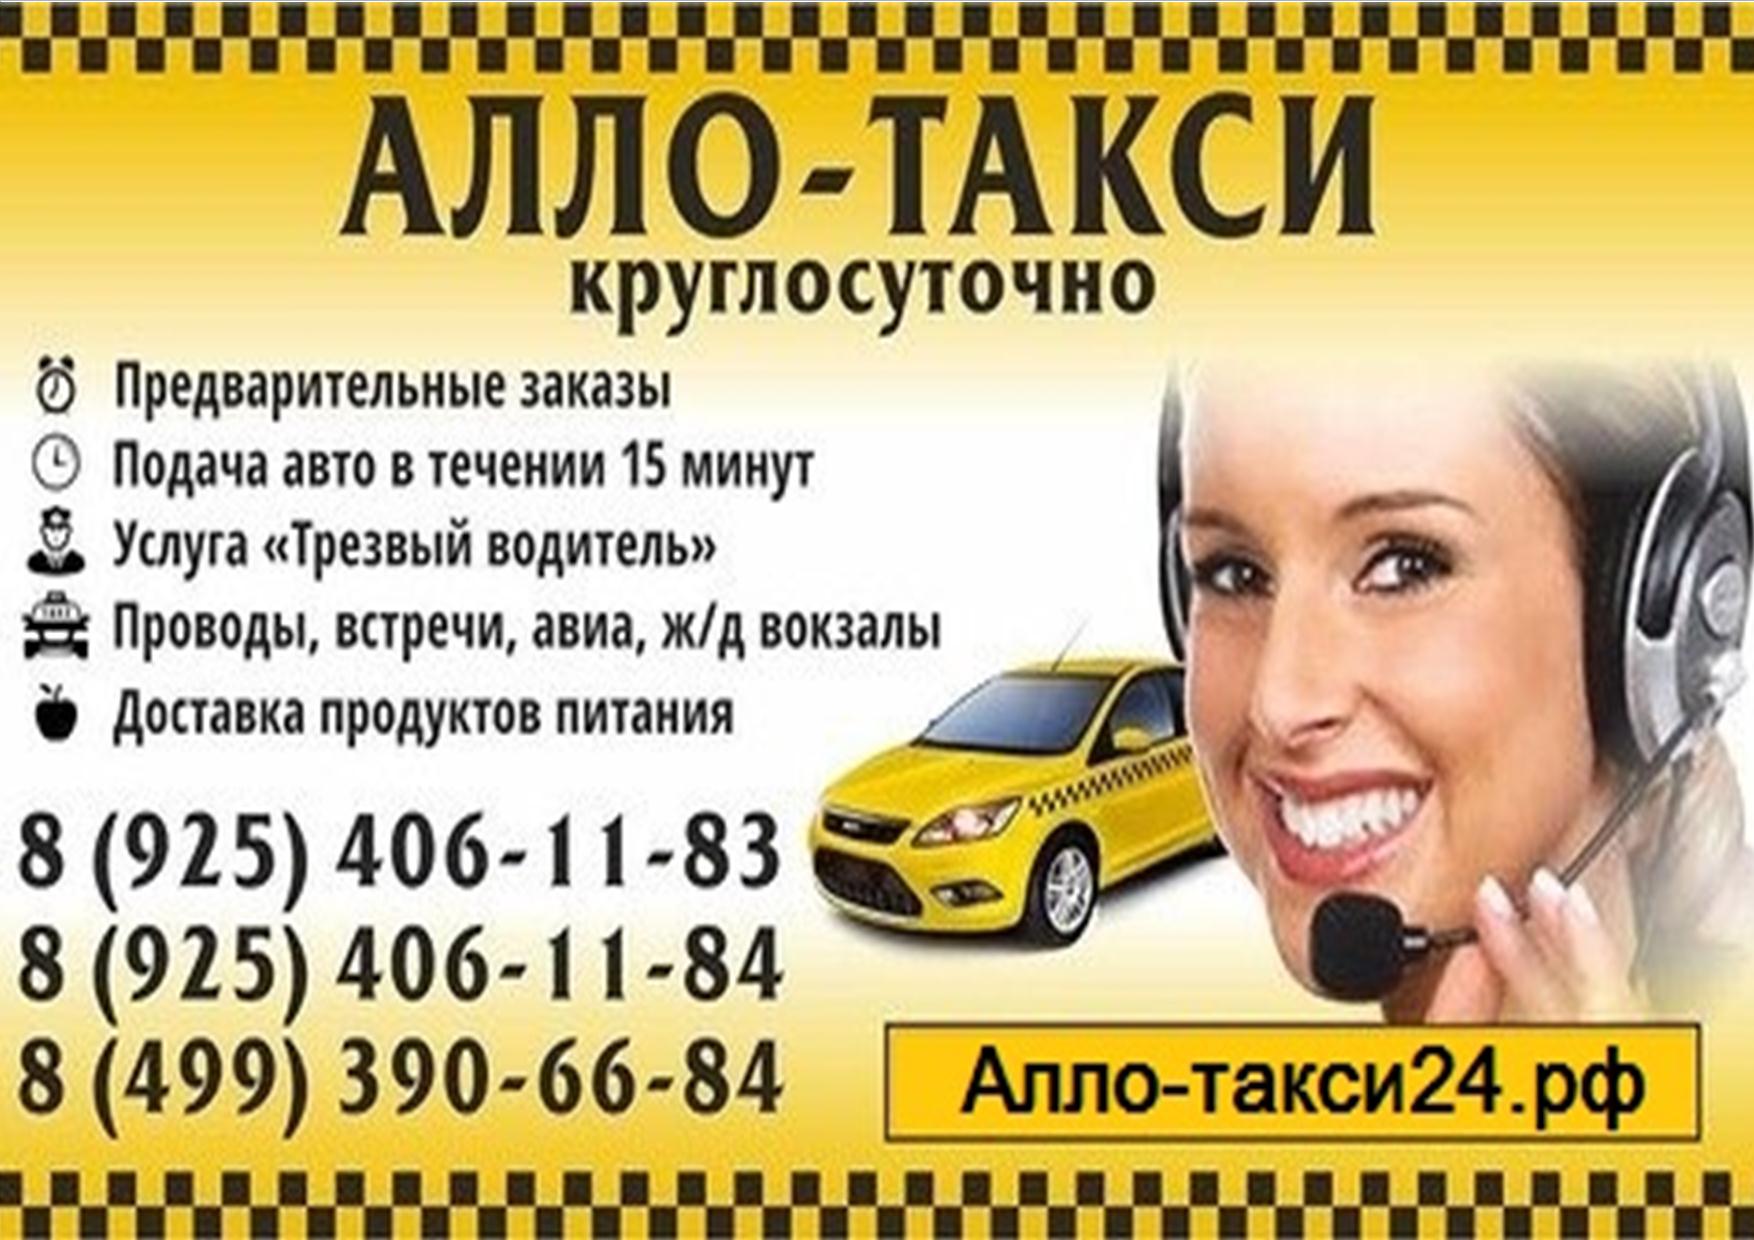 Заказать такси бесплатный номер. Реклама такси. Объявление такси. Визитка такси. Таксист реклама.